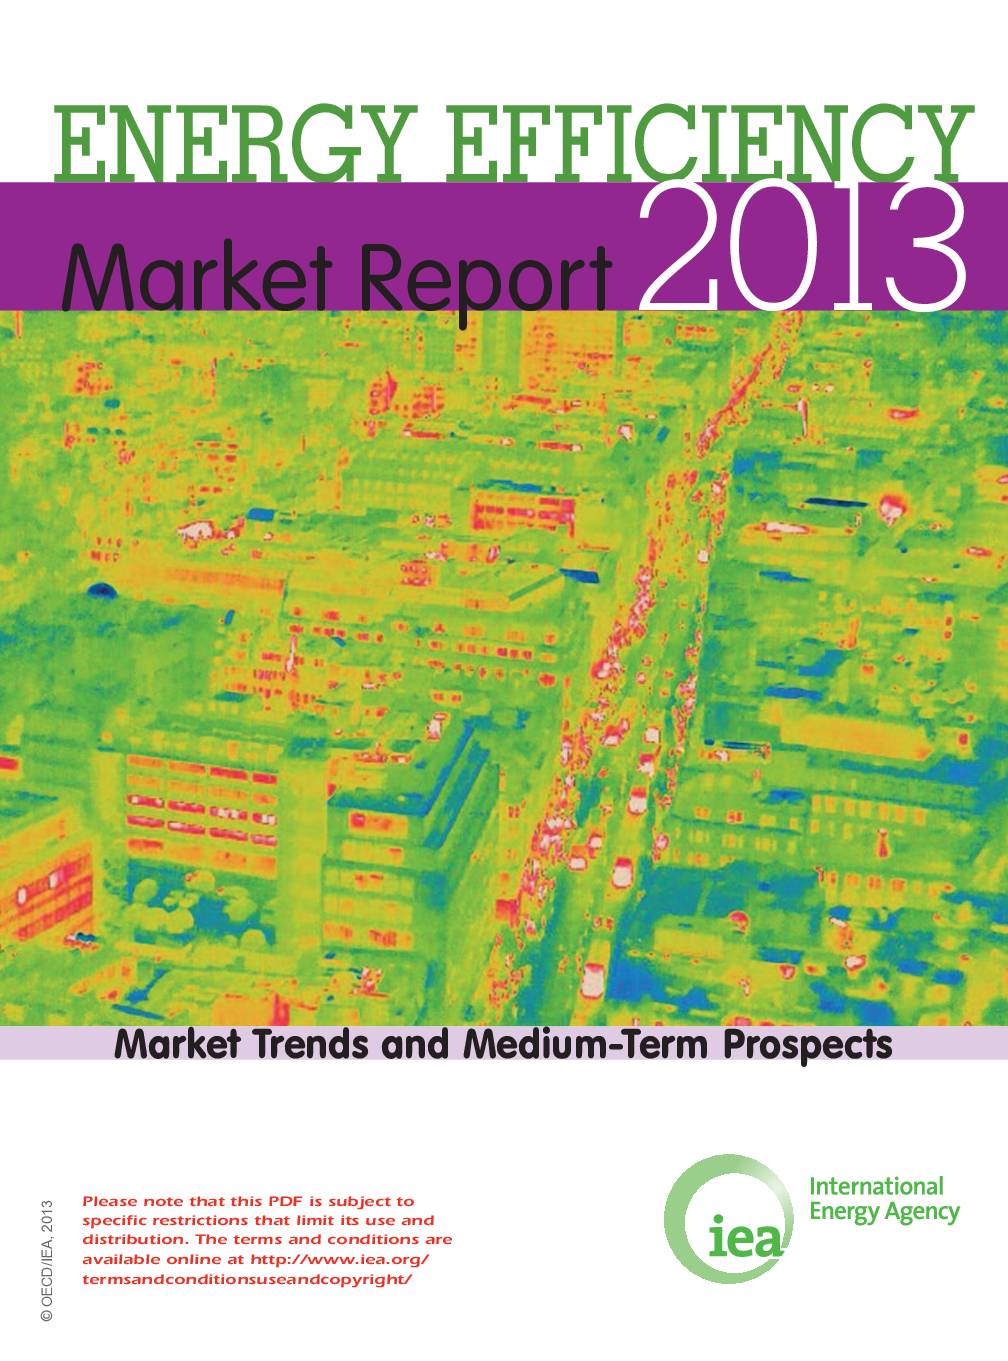 Energy Efficiency Market Report 2013